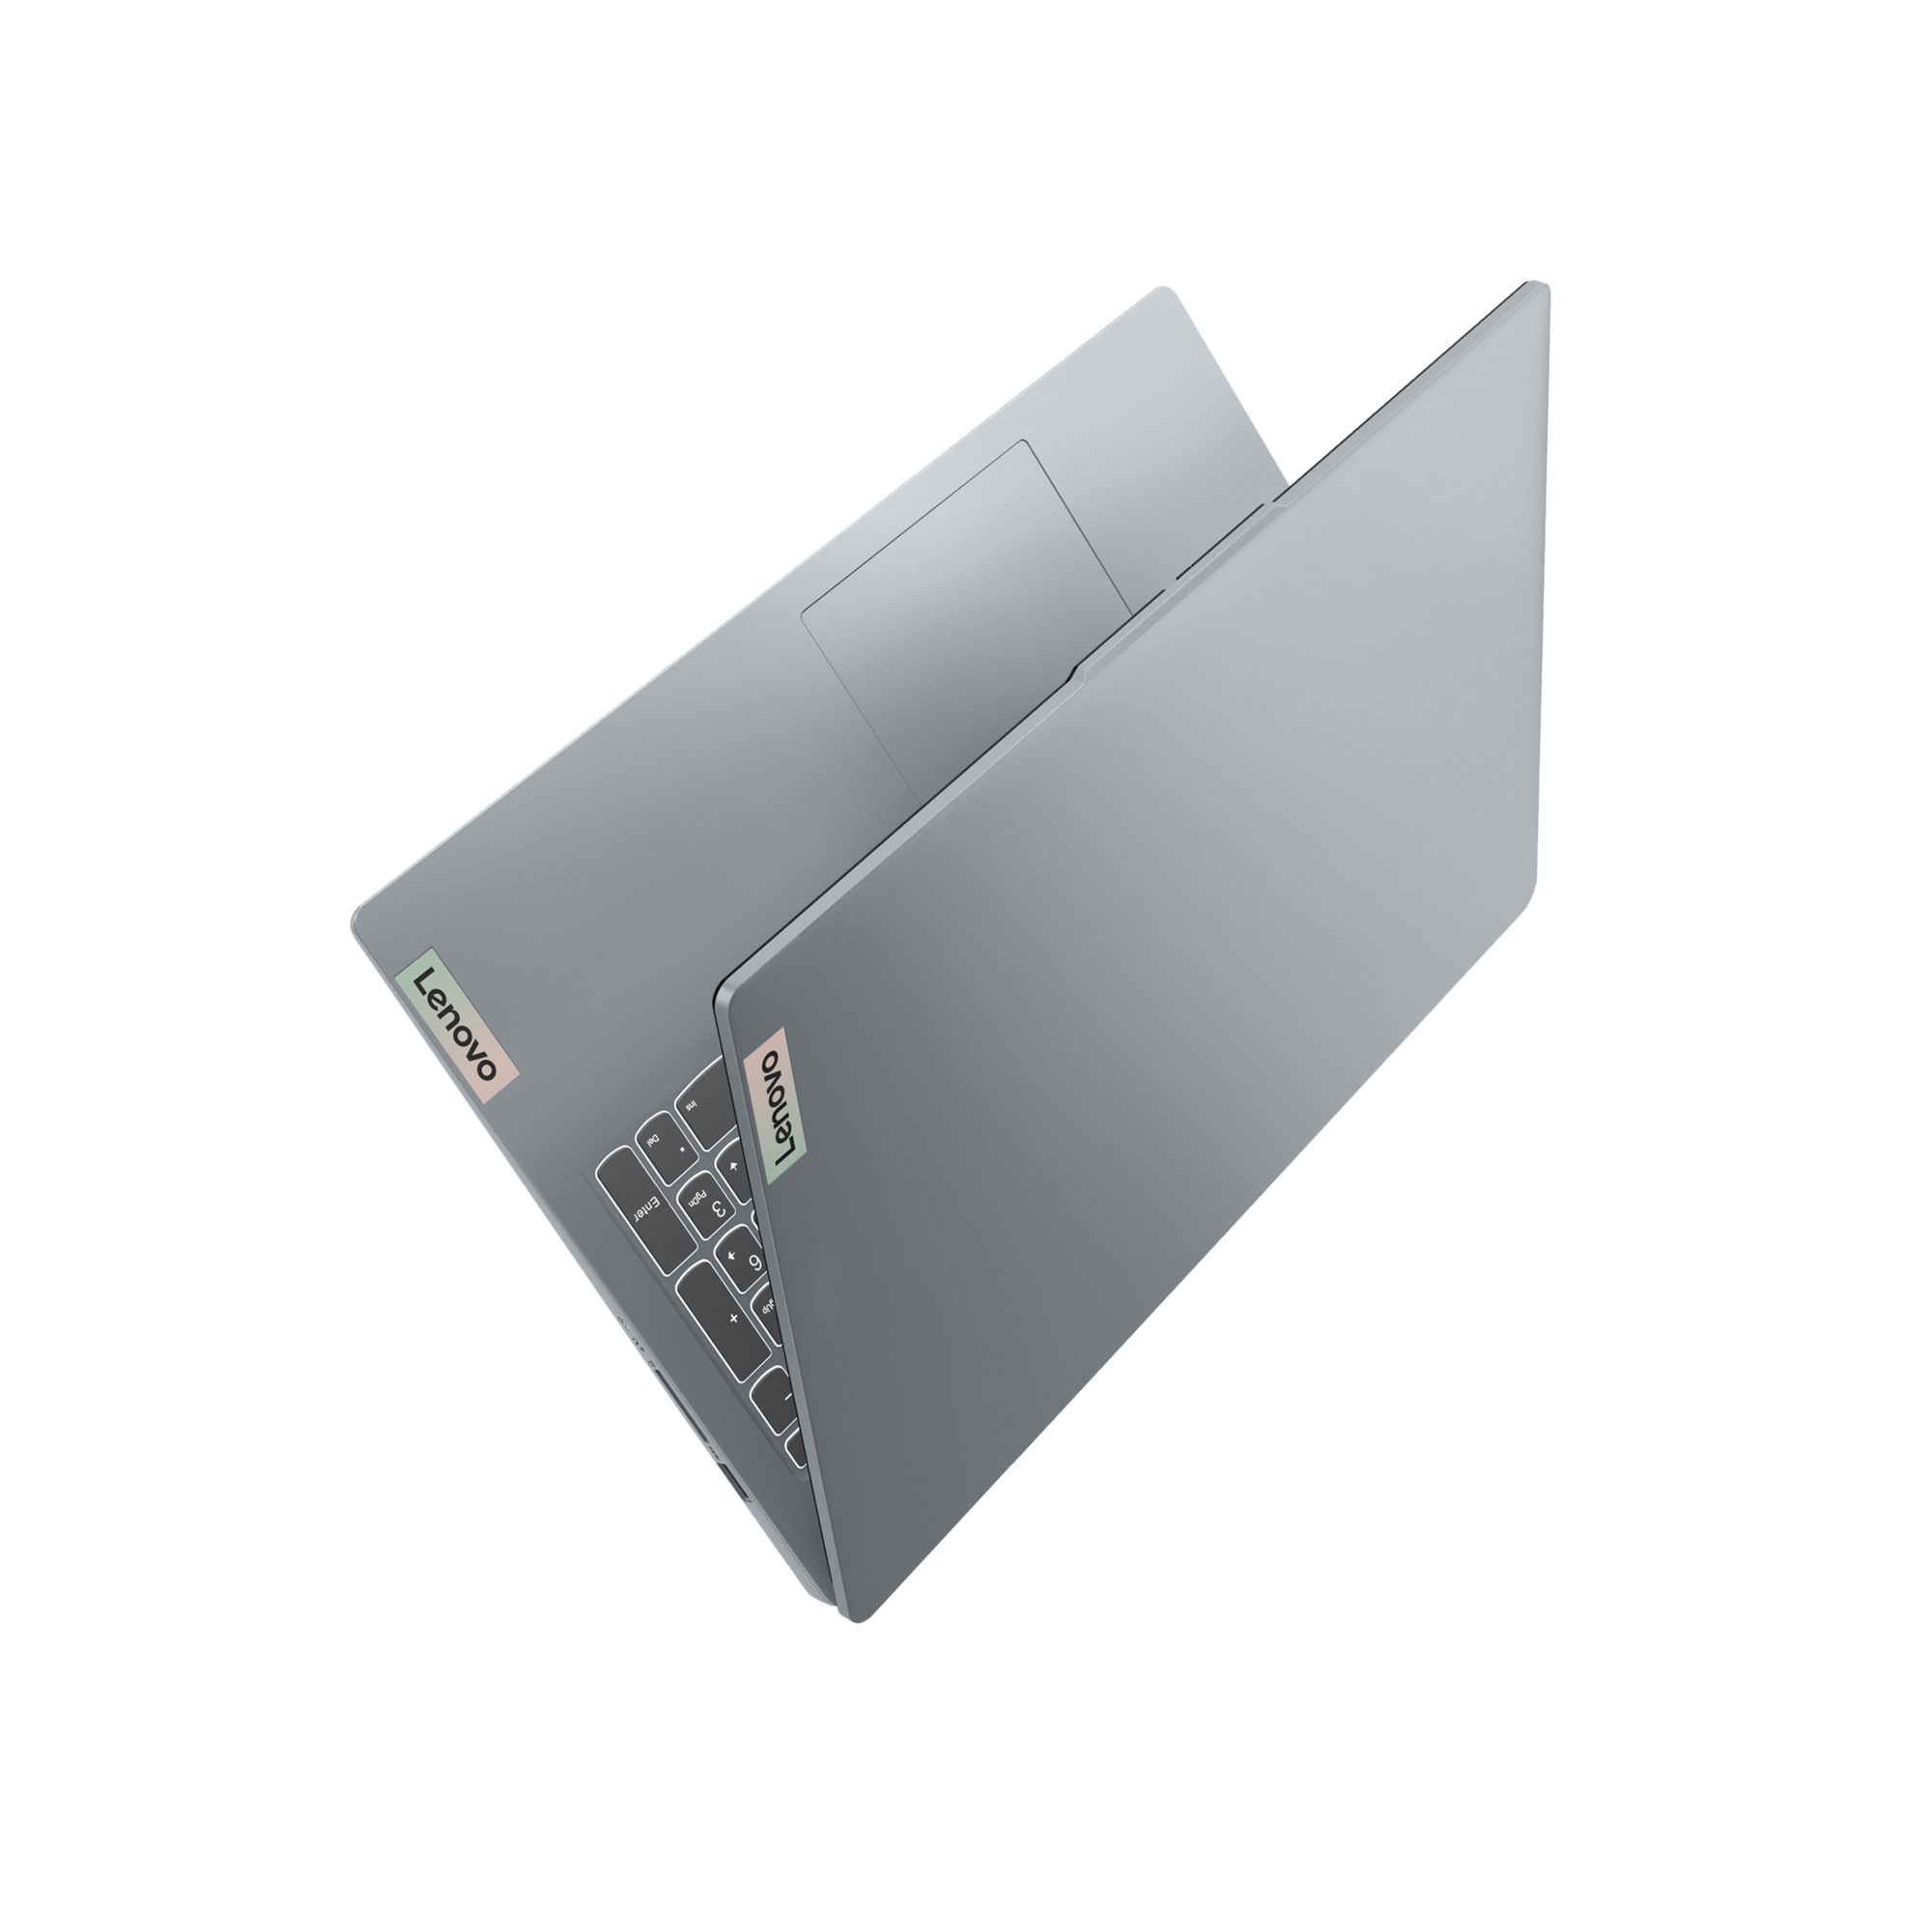 Lenovo i5 8 512GB 83ER000XTR Laptop